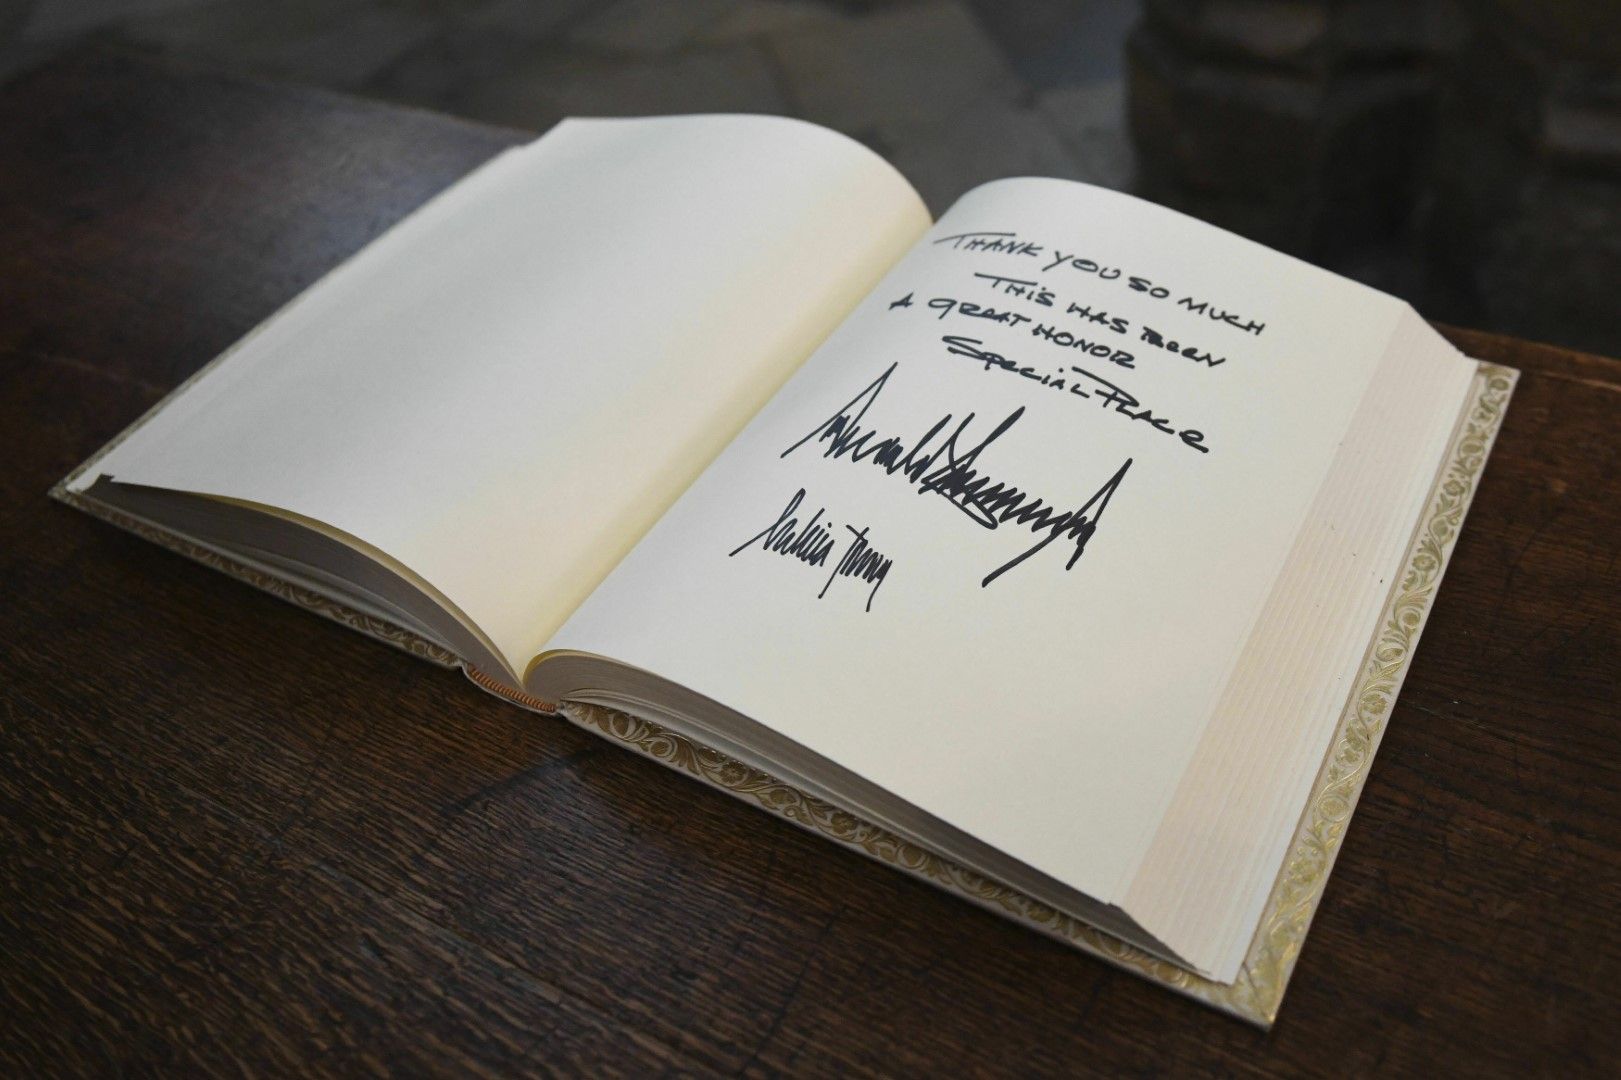 Доналд Тръмп се разписа в посетителската книга в Уестминстърското абатство в центъра на Лондон